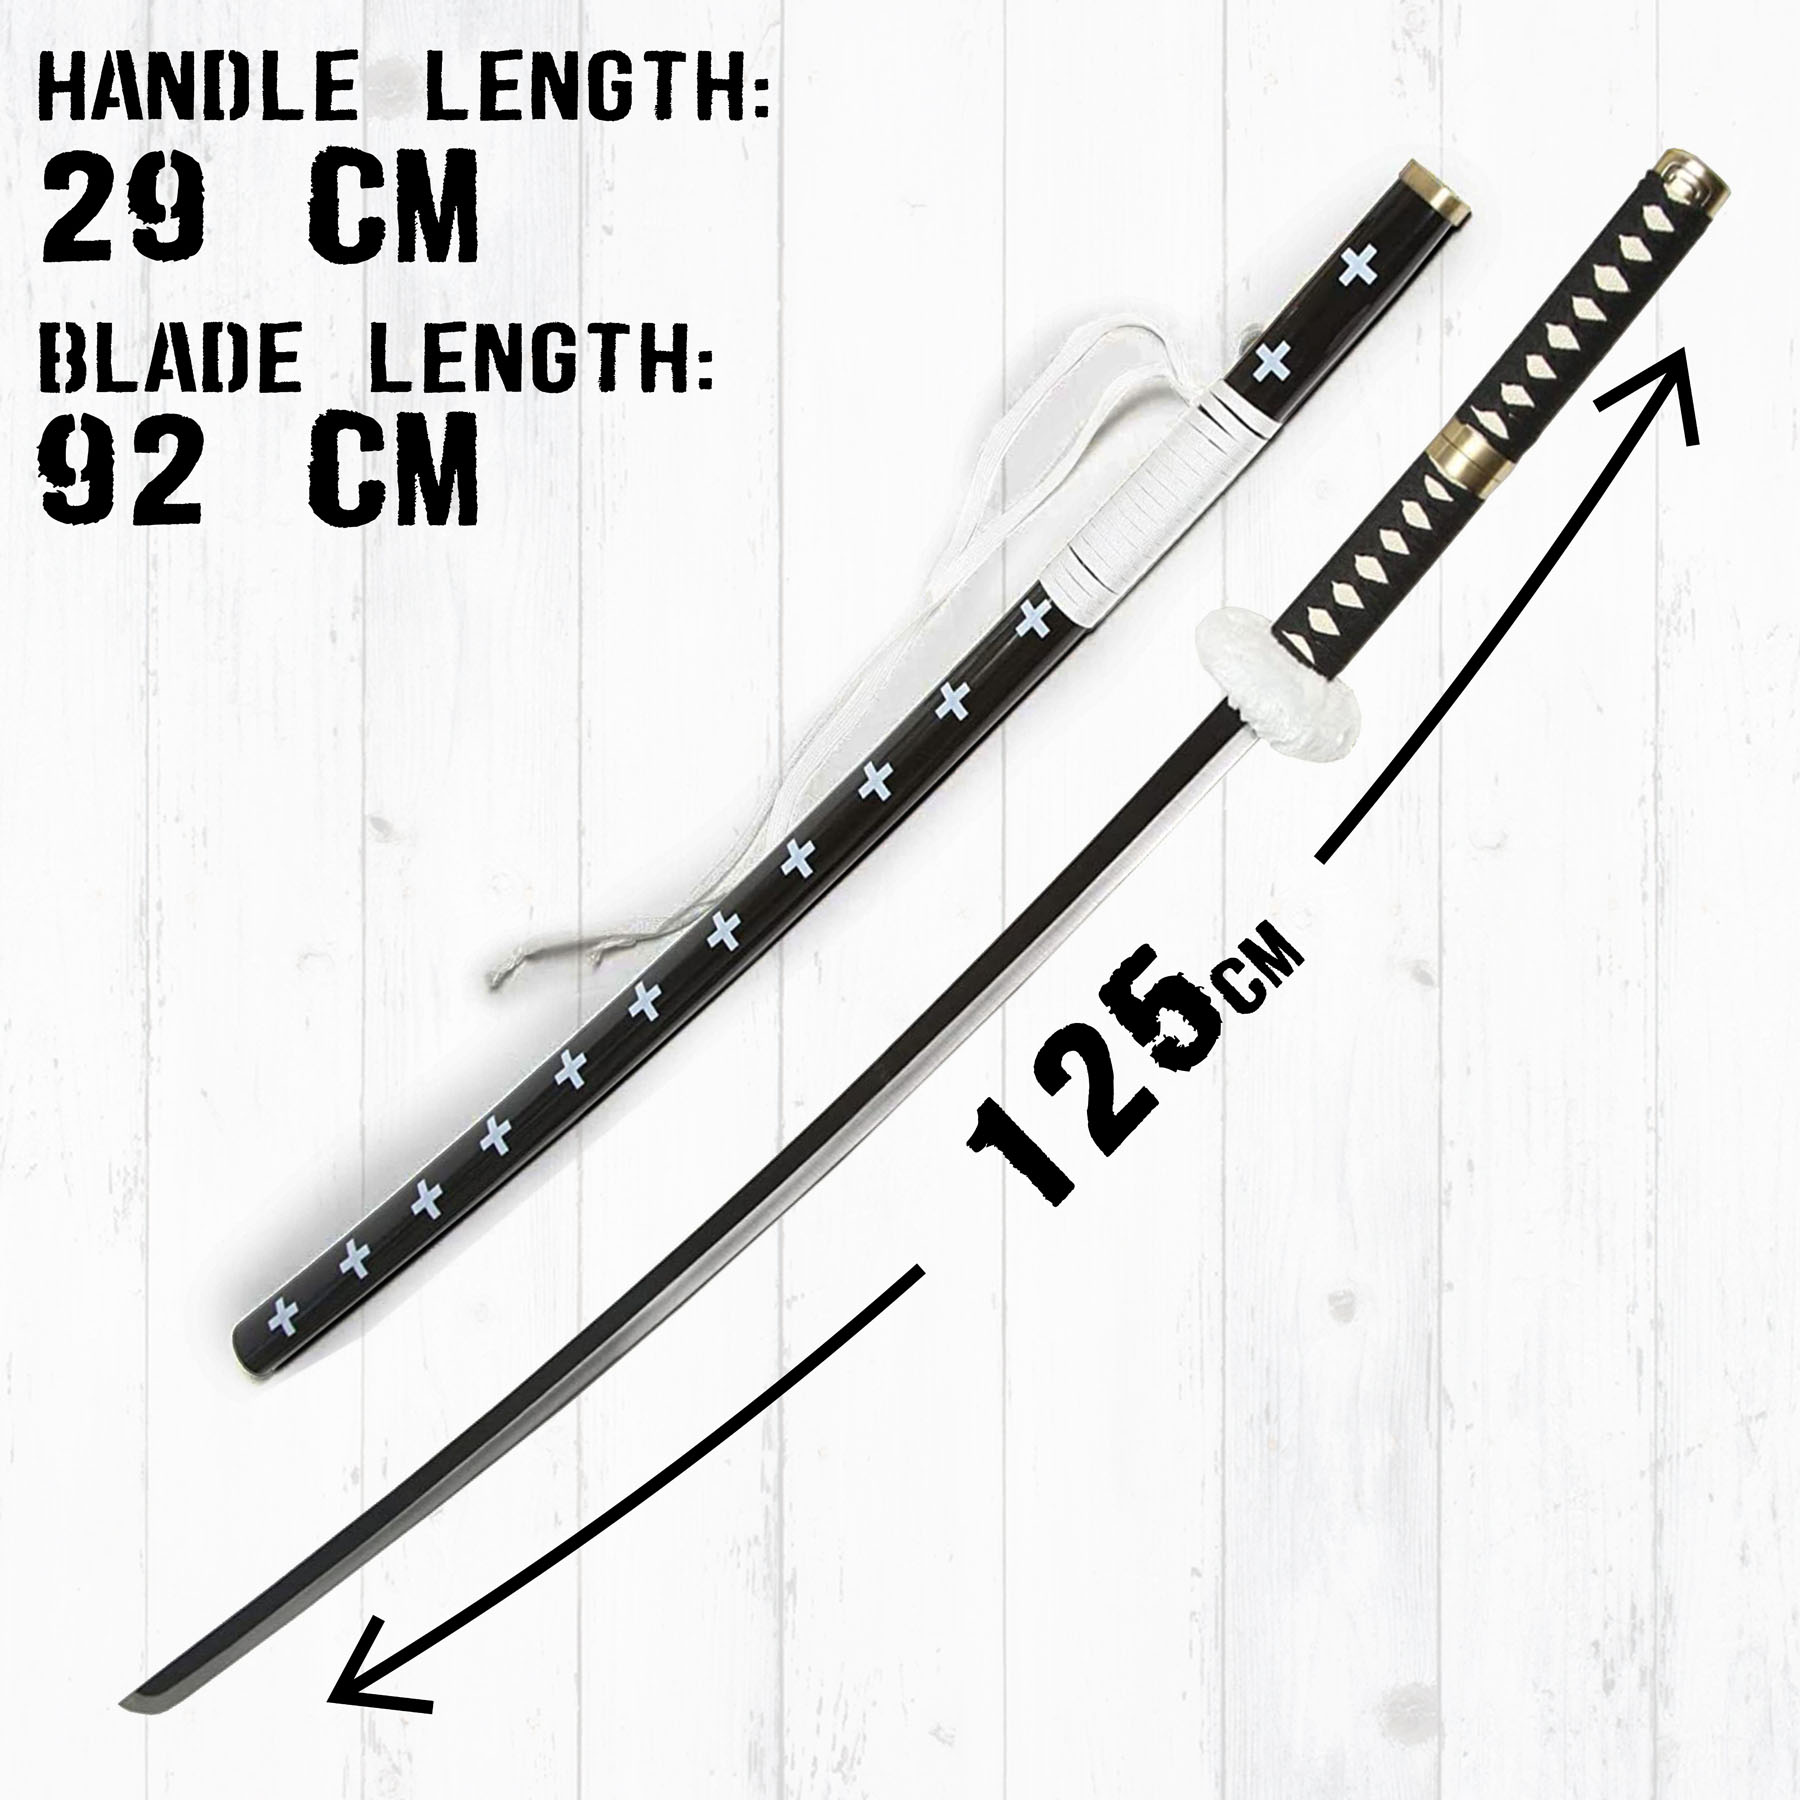 One Piece - Trafalgar Law sword - black handle 125 cm